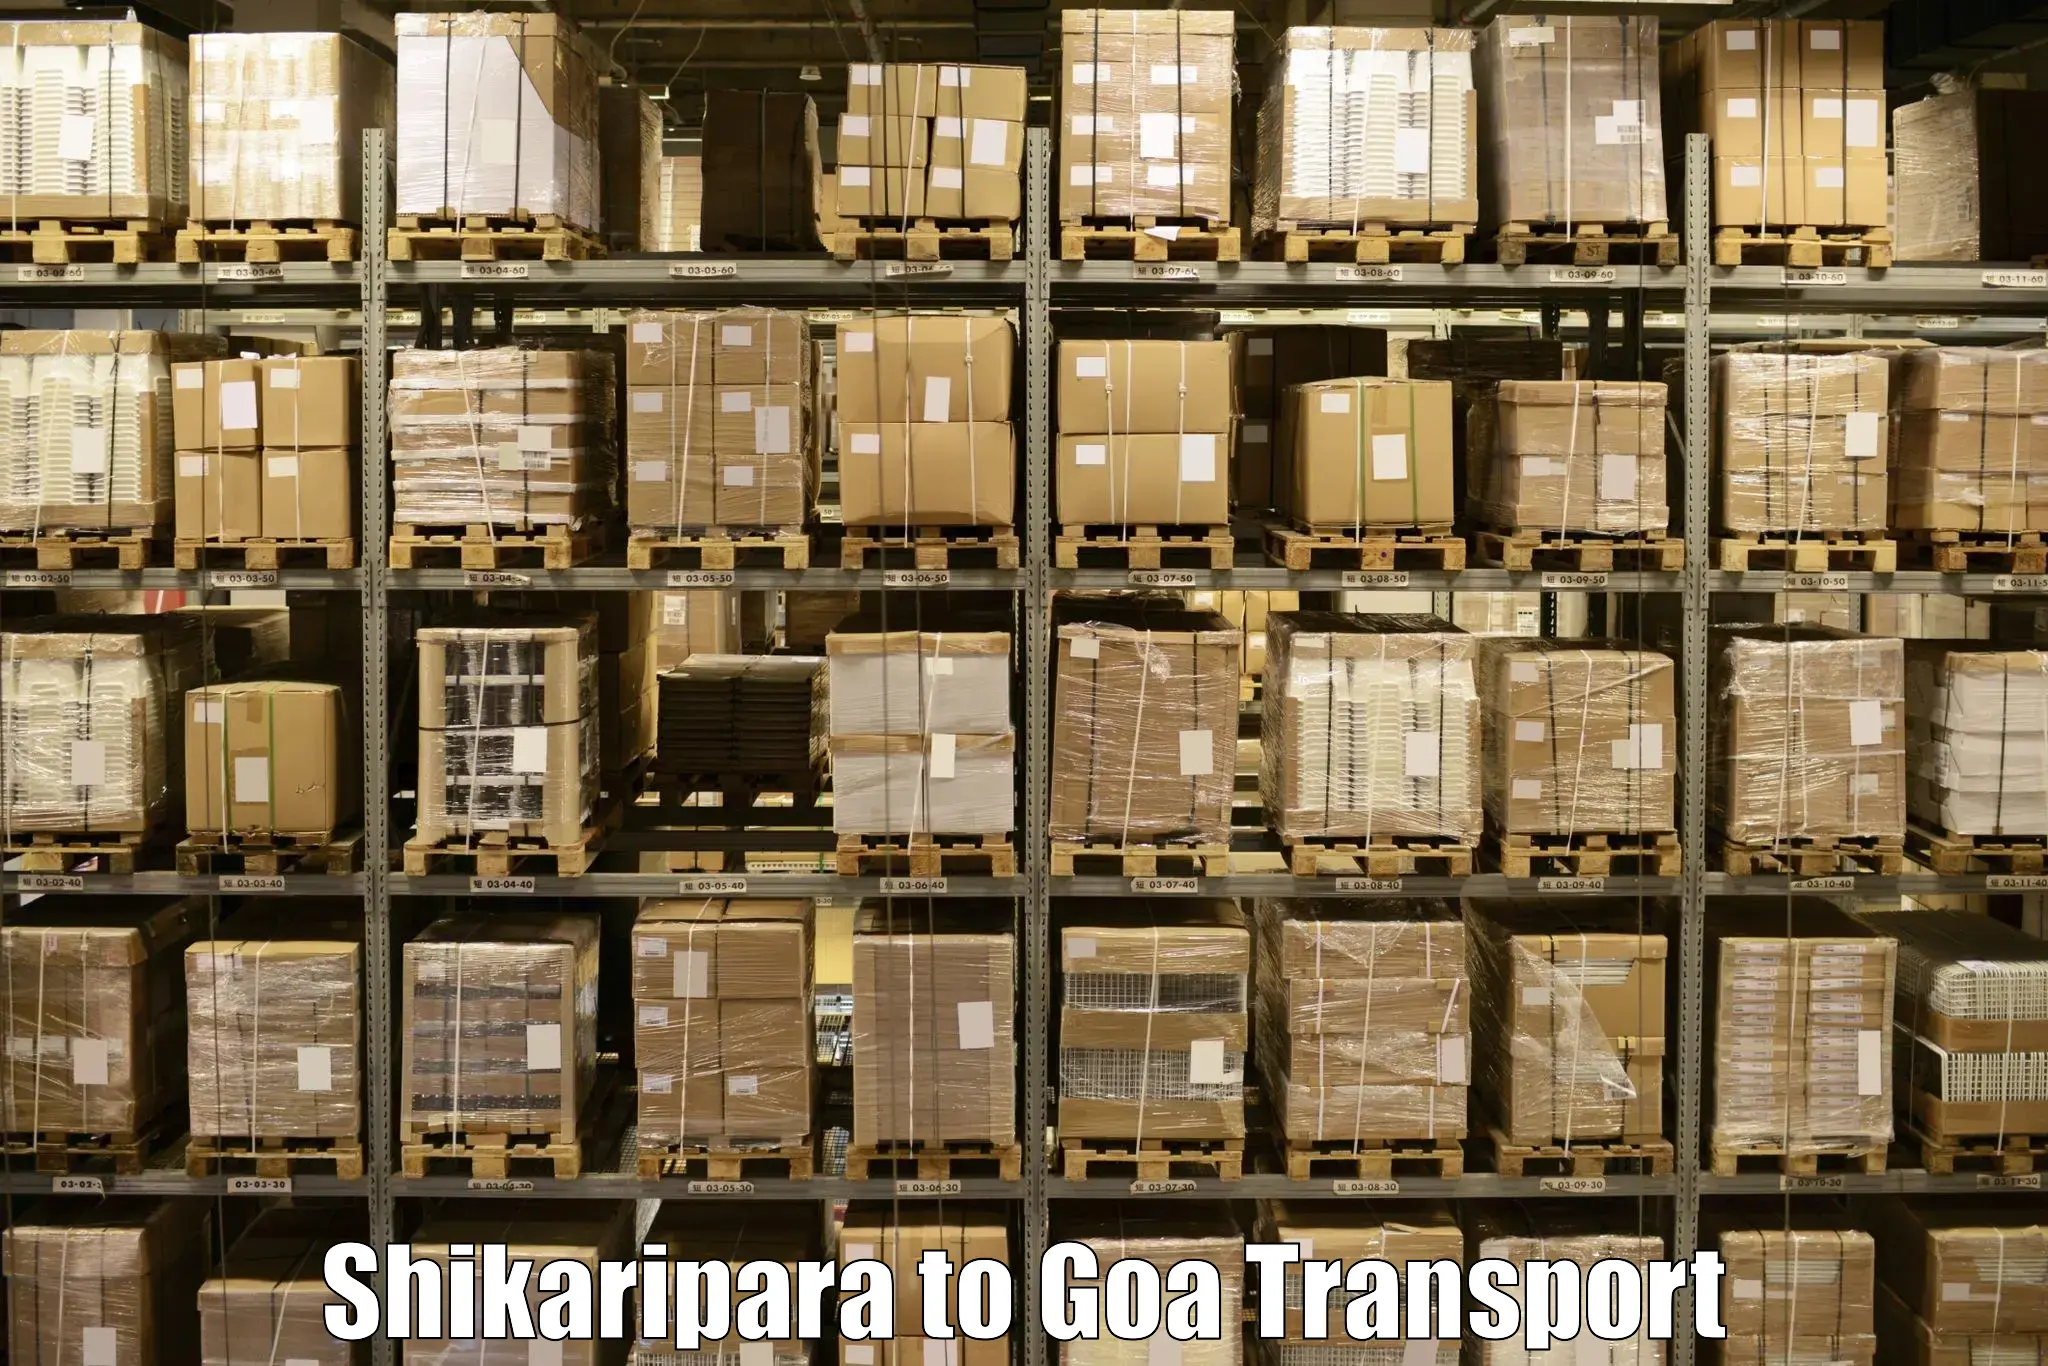 Delivery service Shikaripara to Canacona